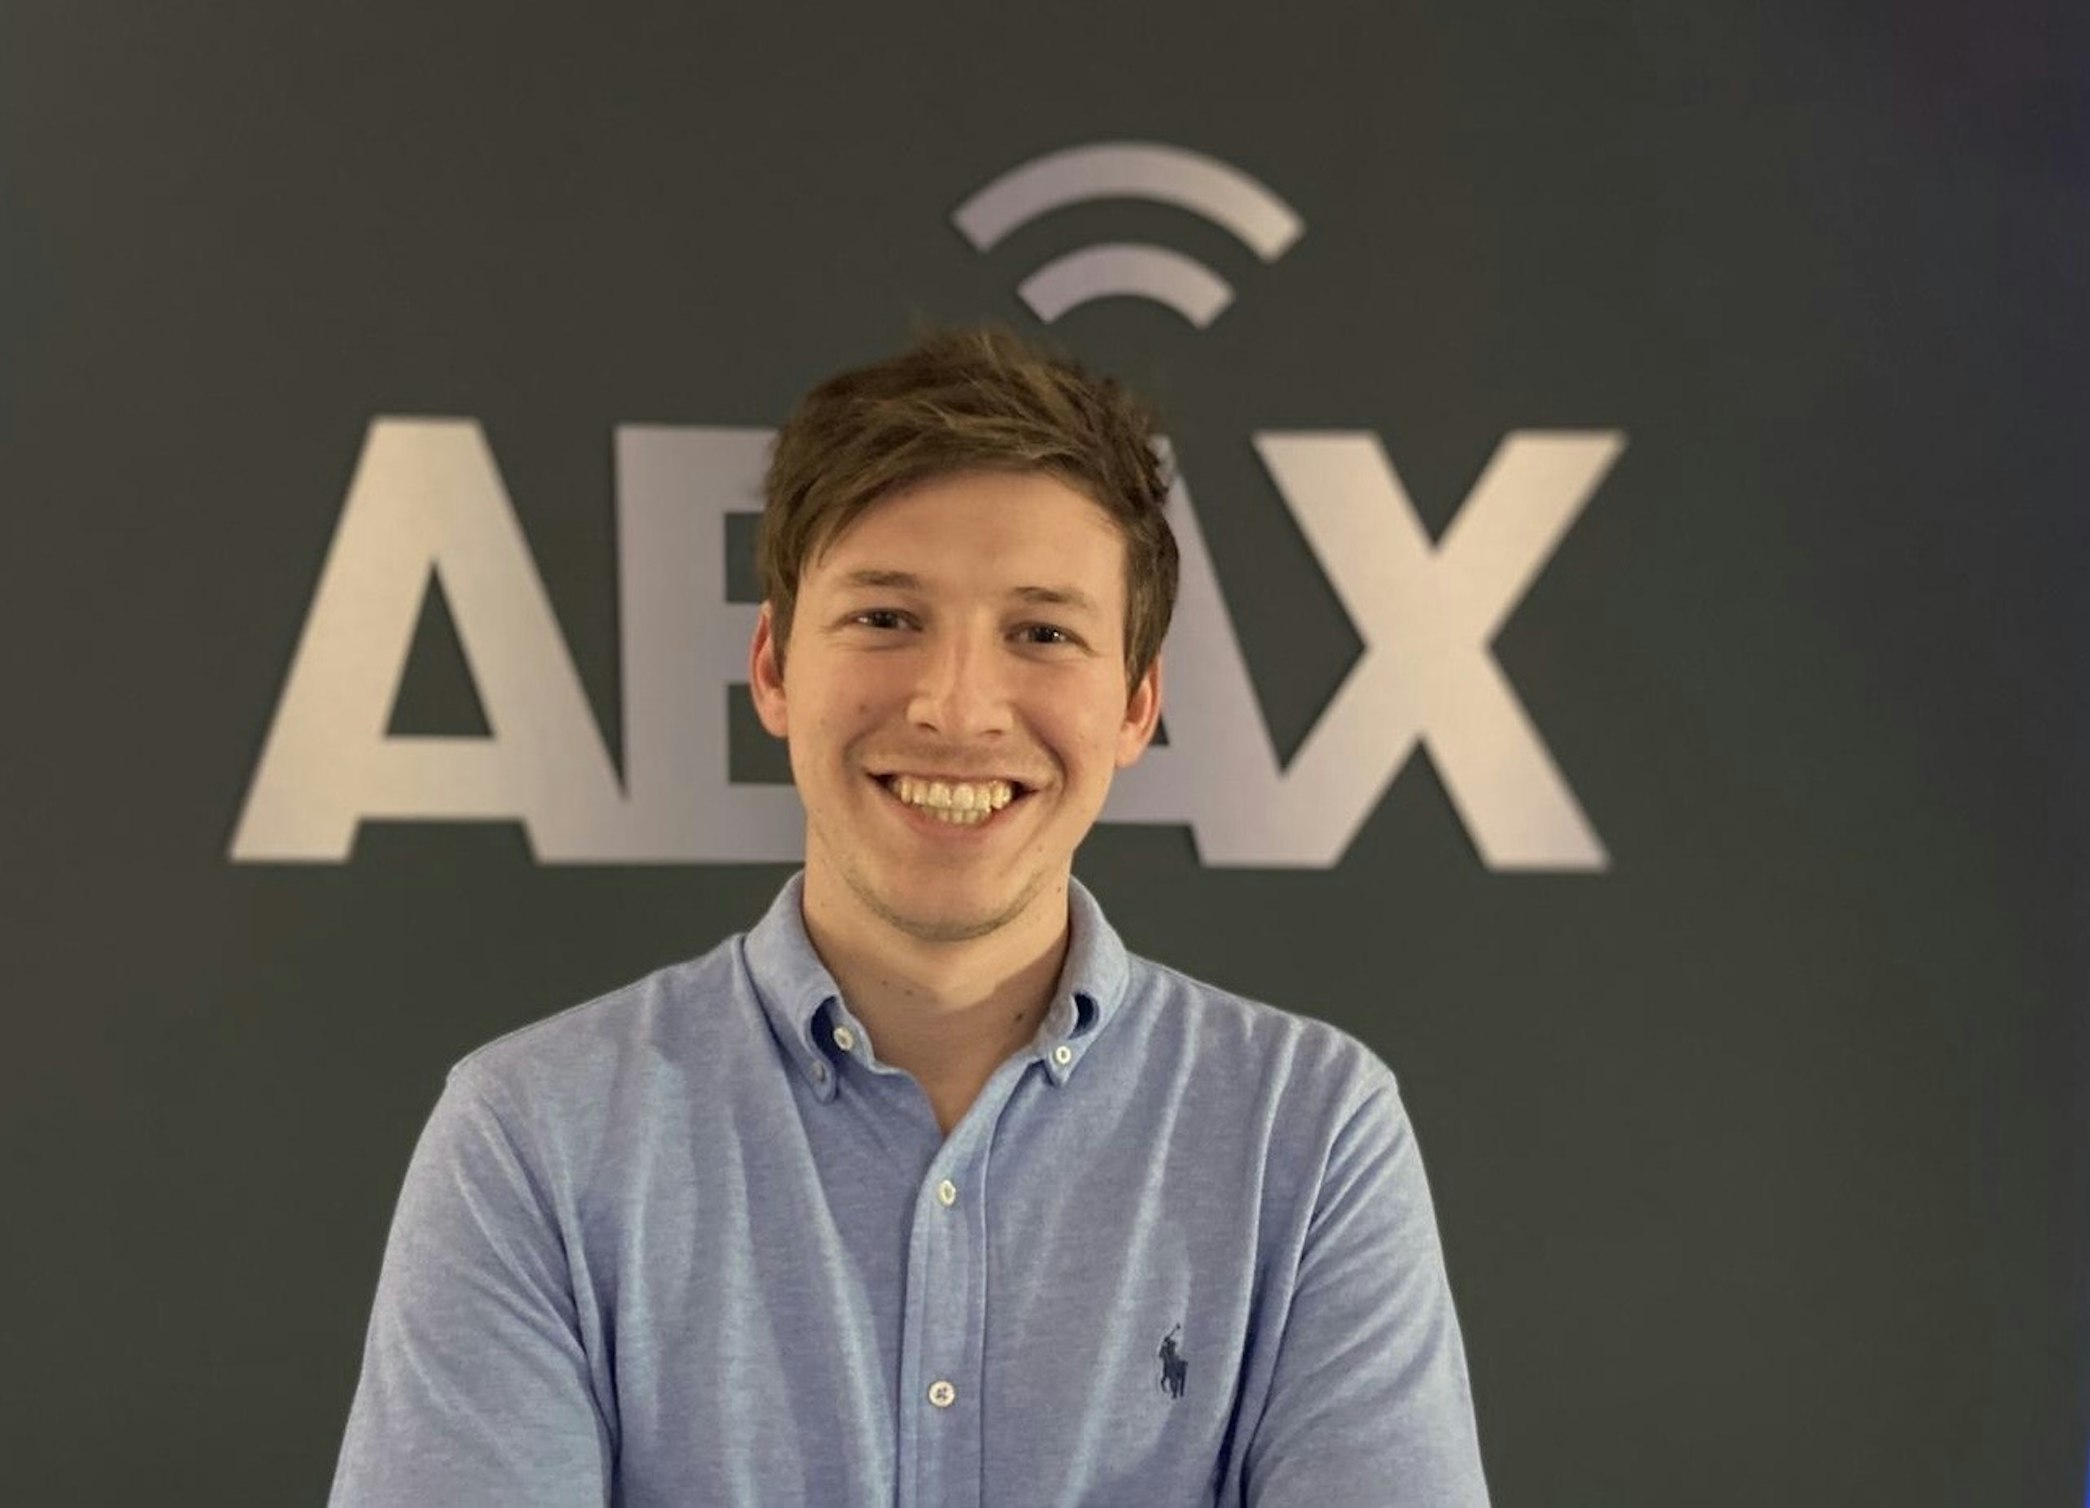 ABAX utser Tom Kocken till ny M&A-direktör för att driva bolagets strategiska tillväxt och förbättra kundvärde